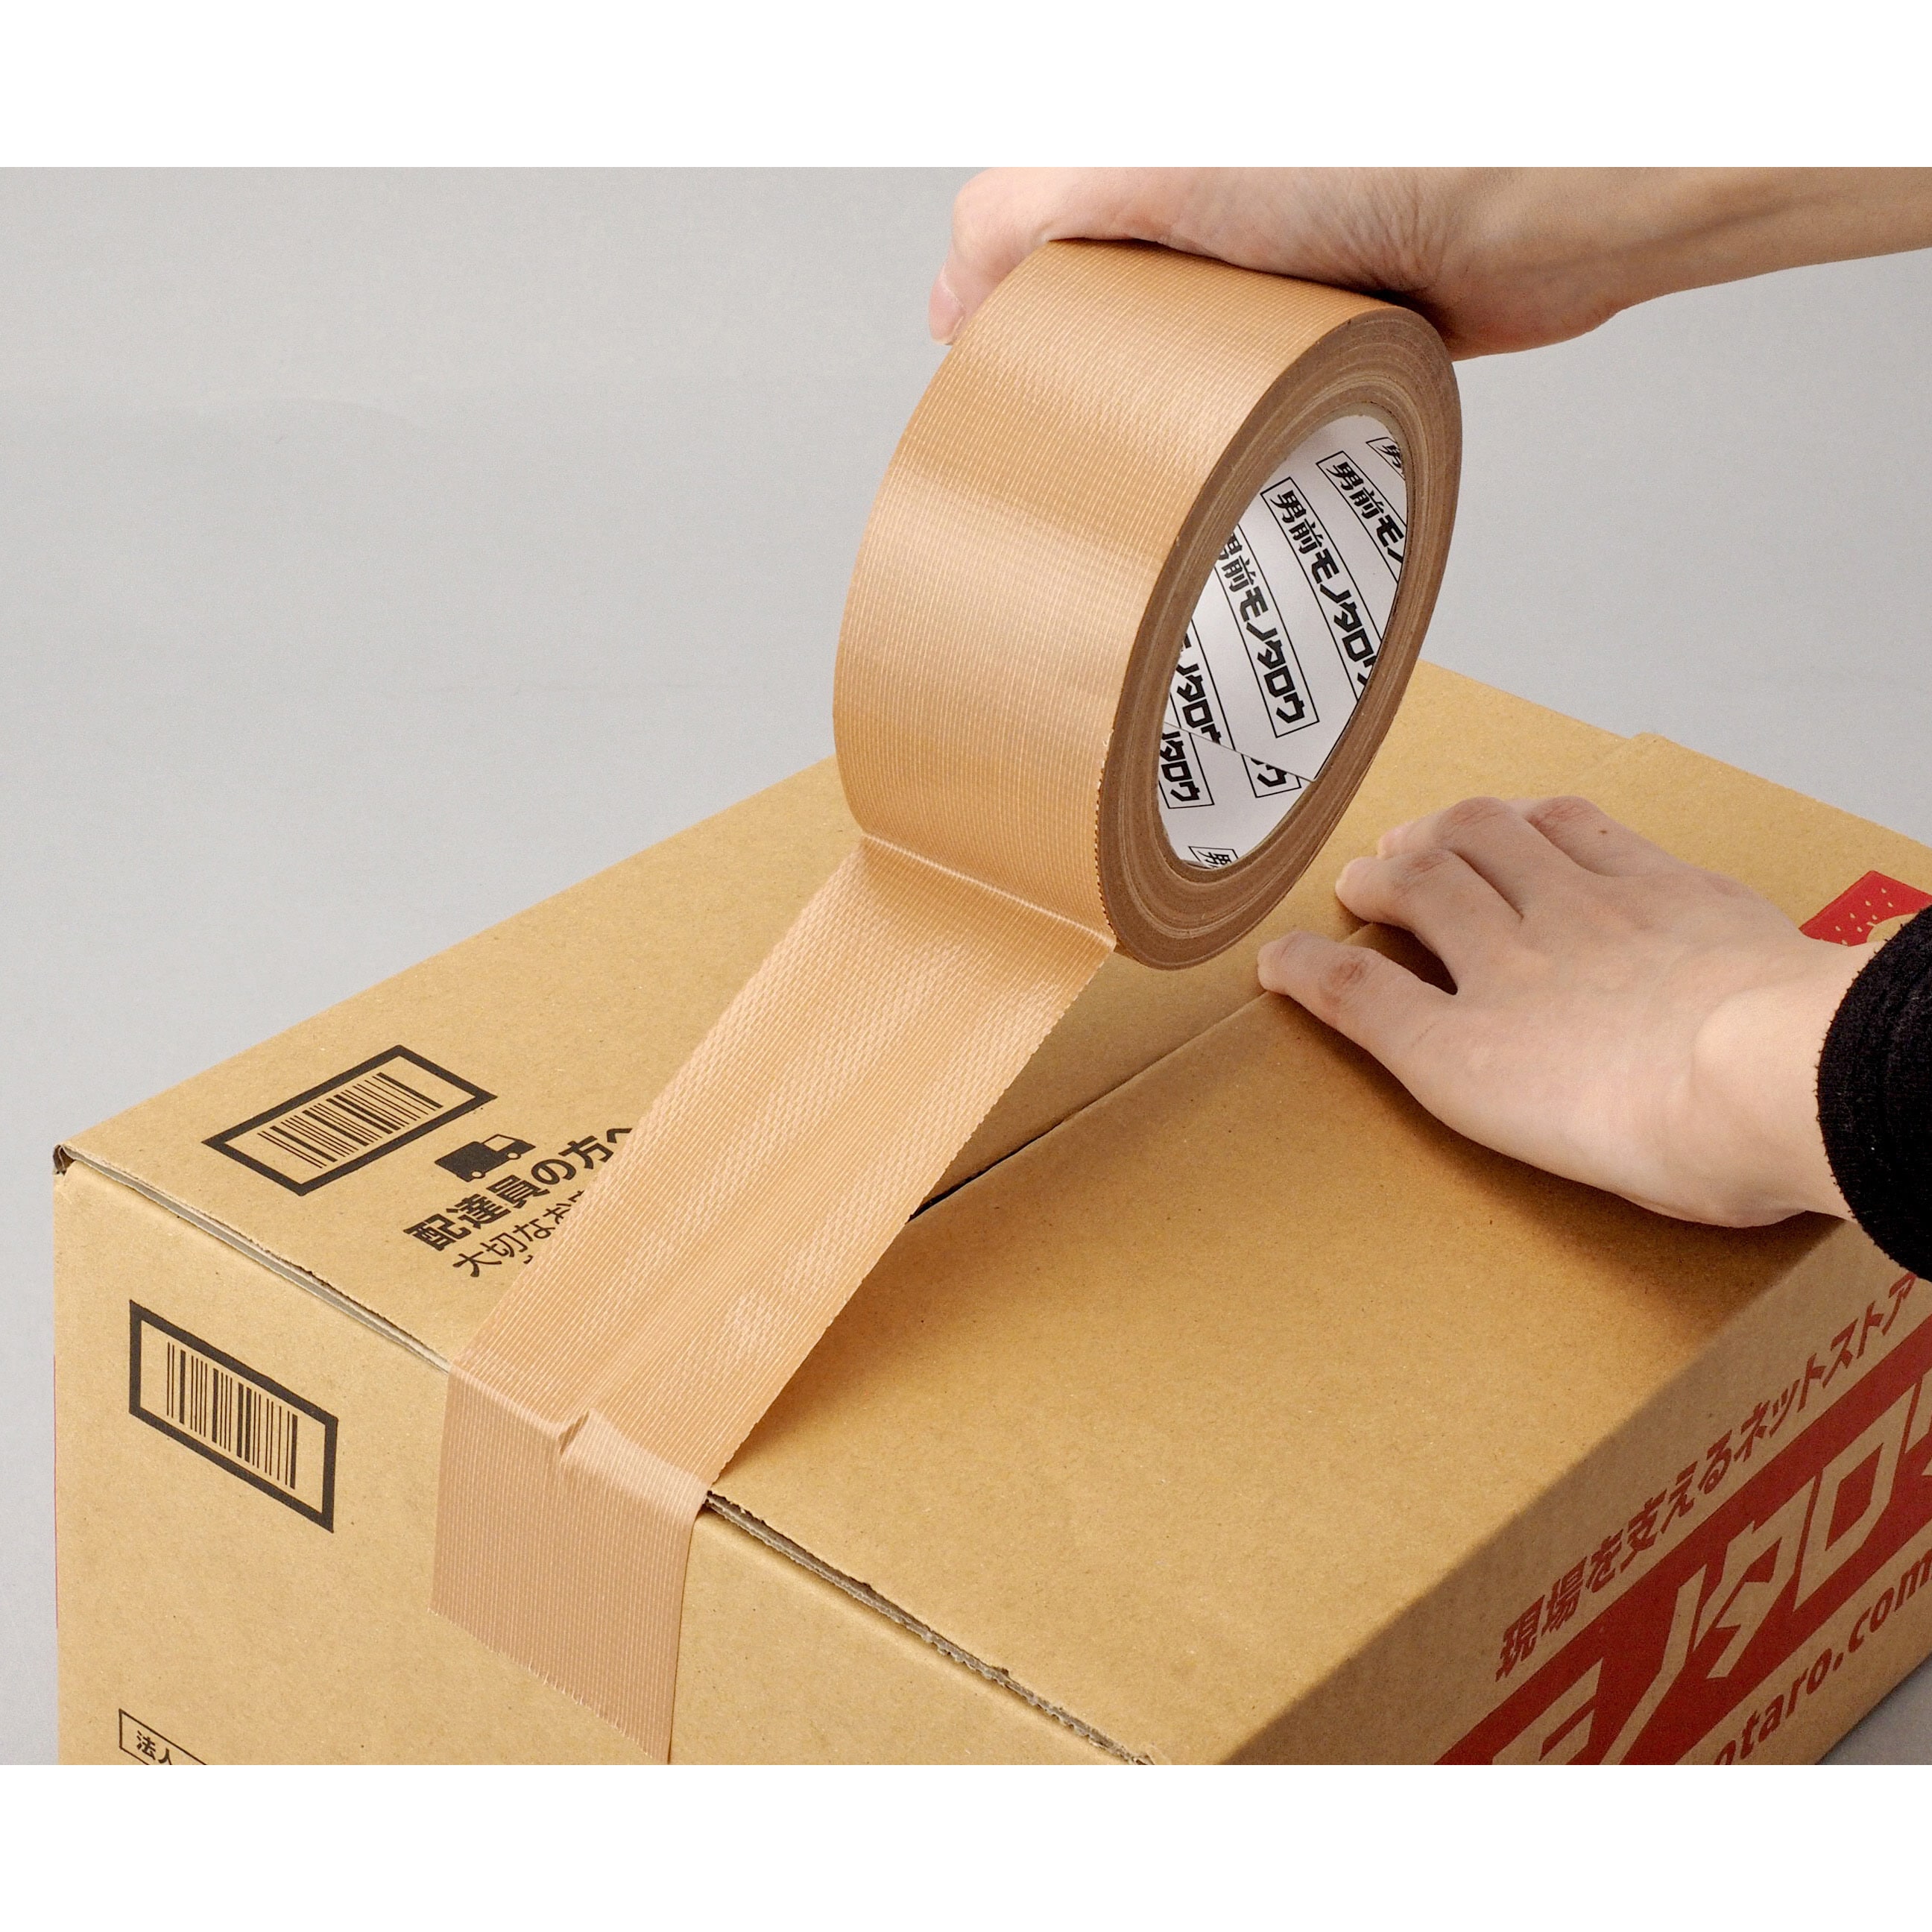 ライオン事務器 布テープ ノンパッケージ 50mm×25m KN-859NP 1箱 30巻 梱包、テープ